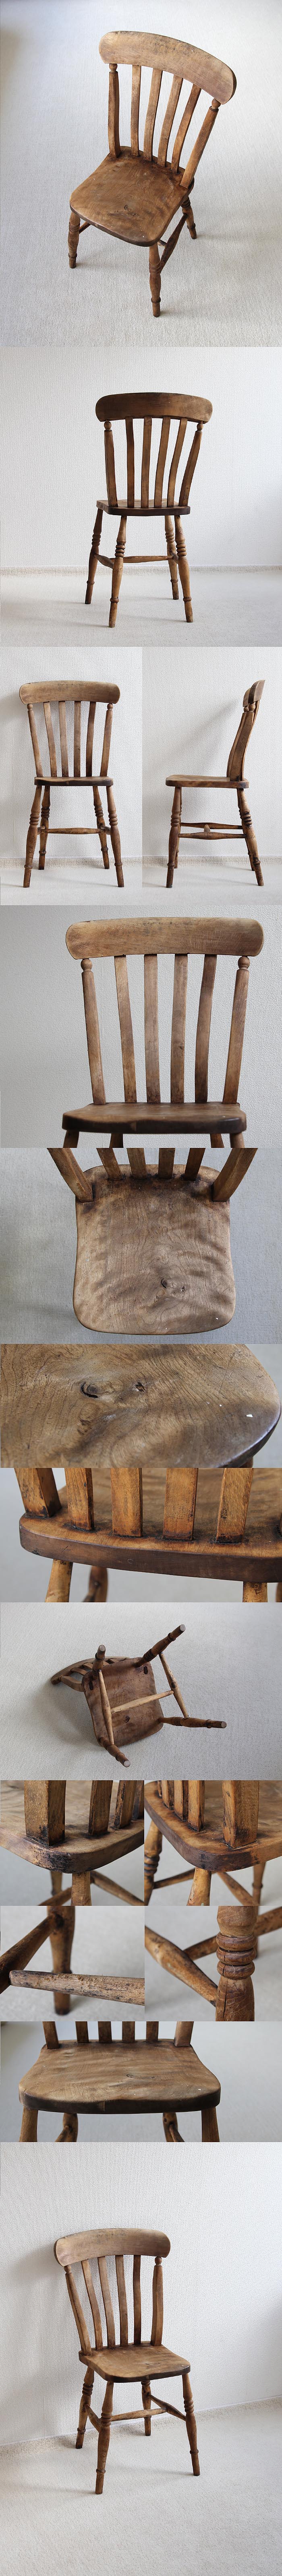 イギリス アンティーク キッチンチェア 木製椅子 インテリア 無垢材 家具 英国「ダイニングチェア」V-634